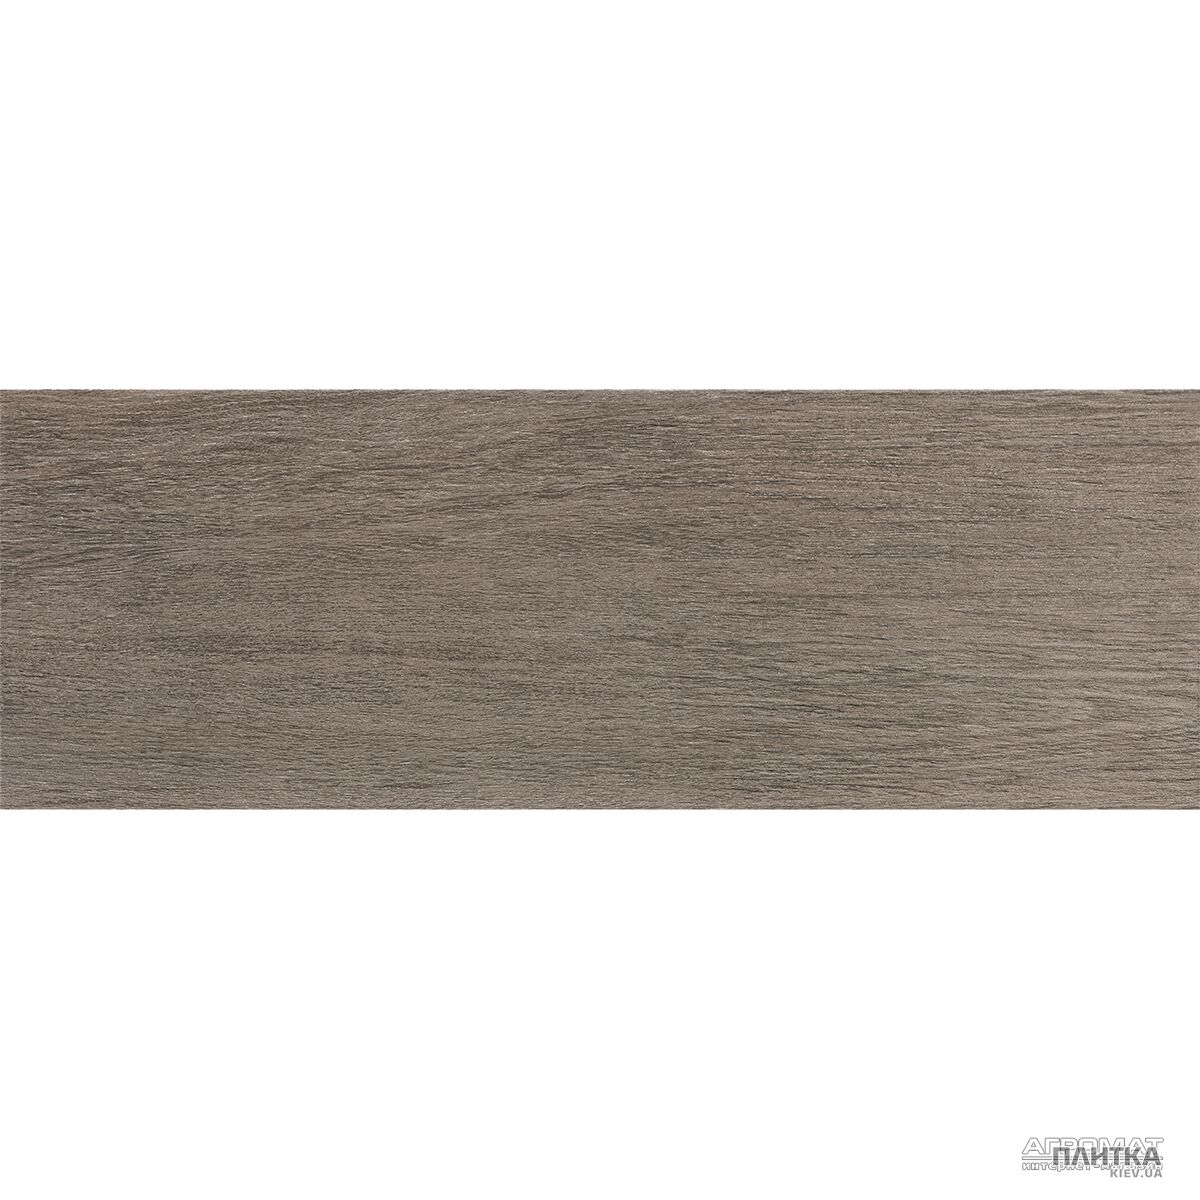 Напольная плитка Argenta Malden MALDEN OLIVO коричневый,серый